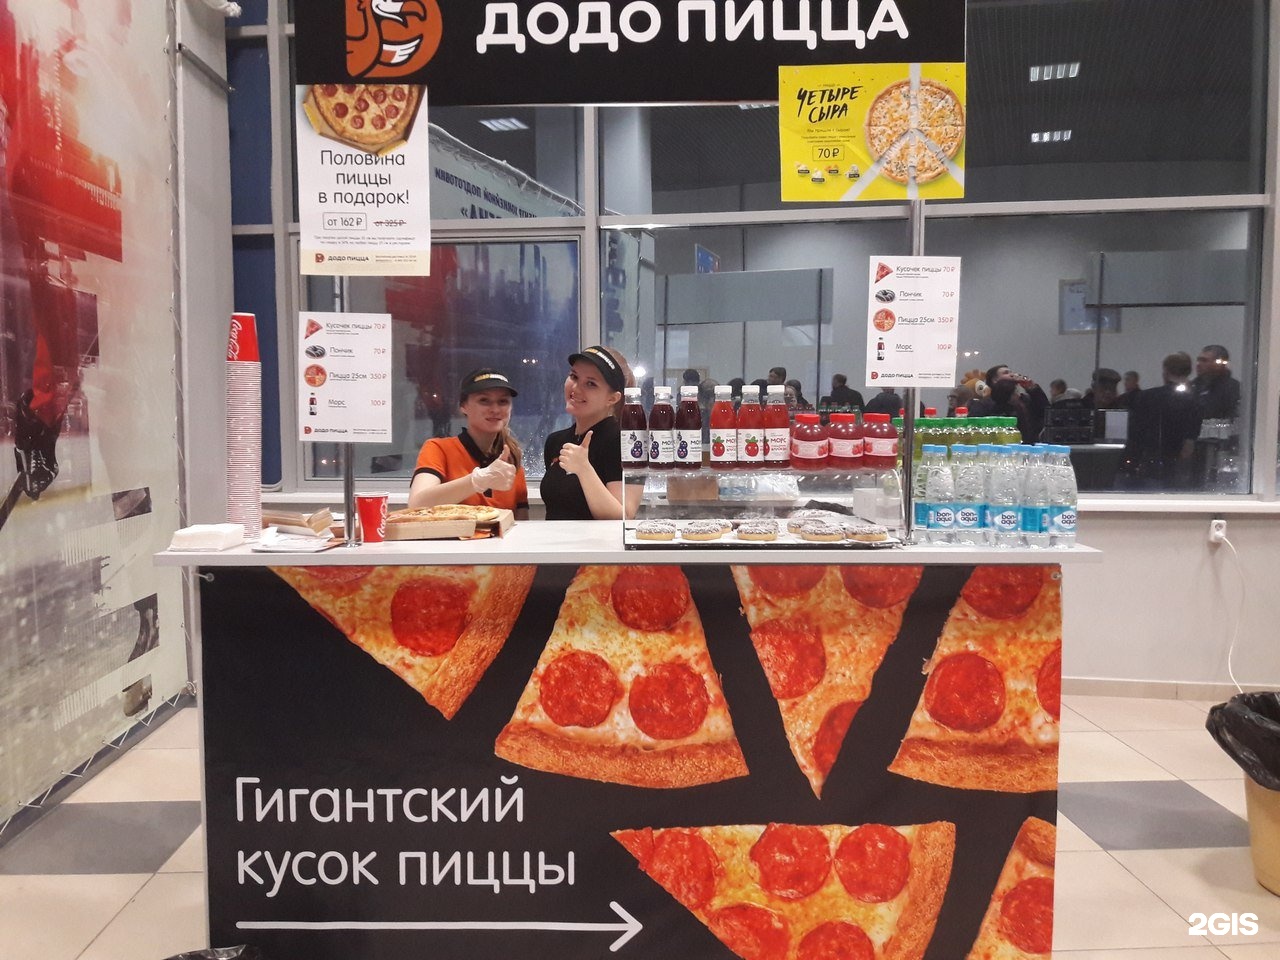 режим работы додо пиццы в тольятти фото 23